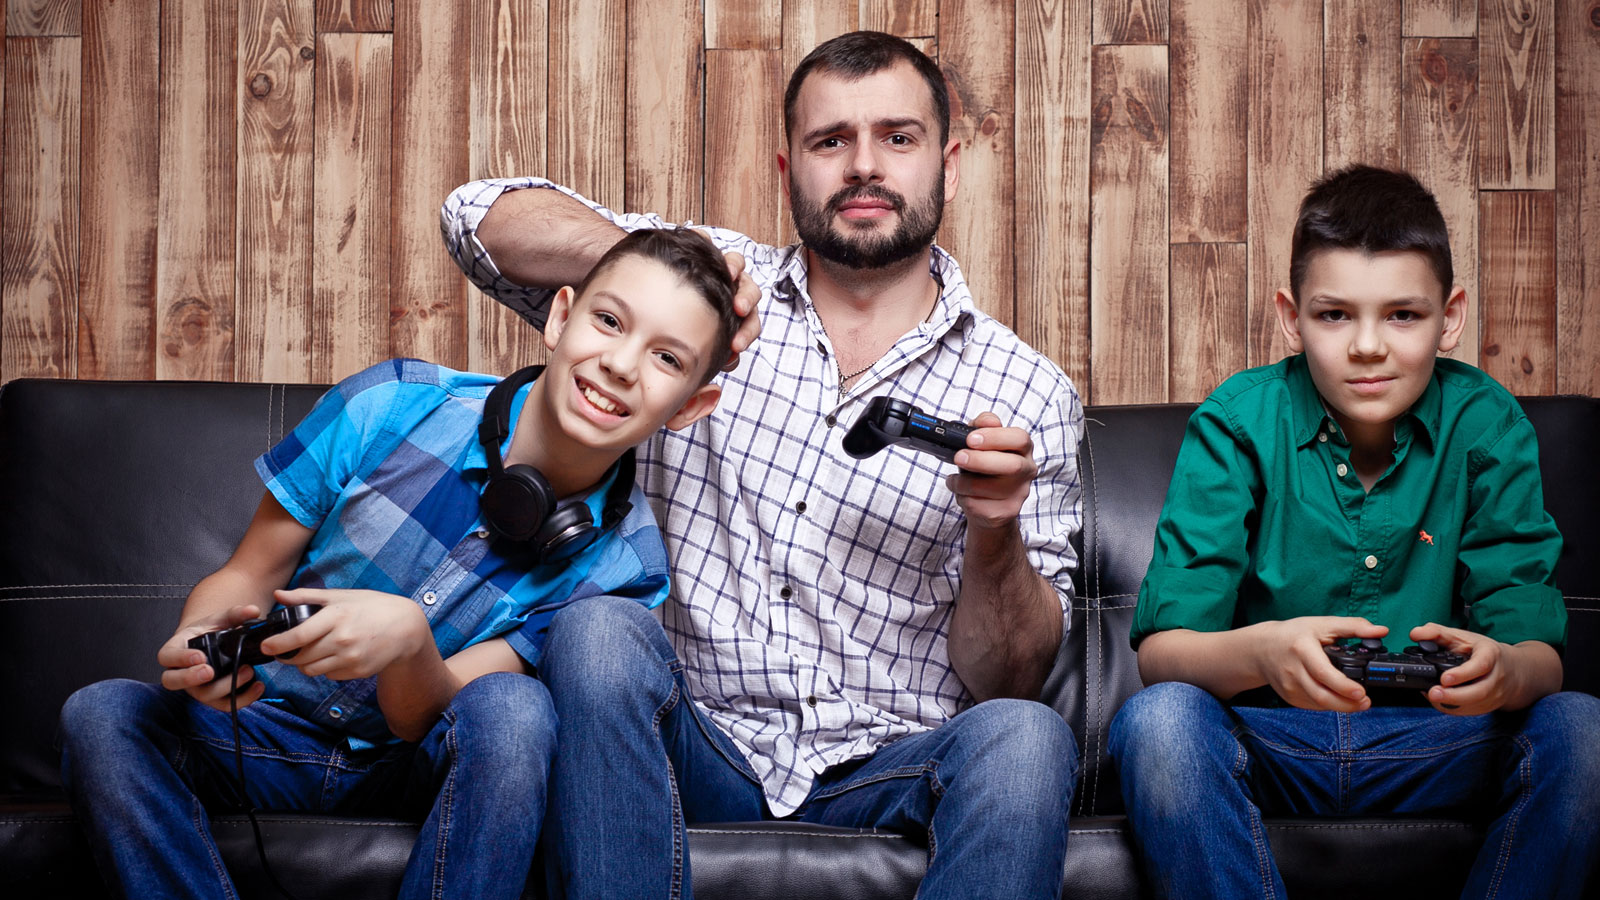 Un estudio revela que casi la mitad de los gamers son padres de familia